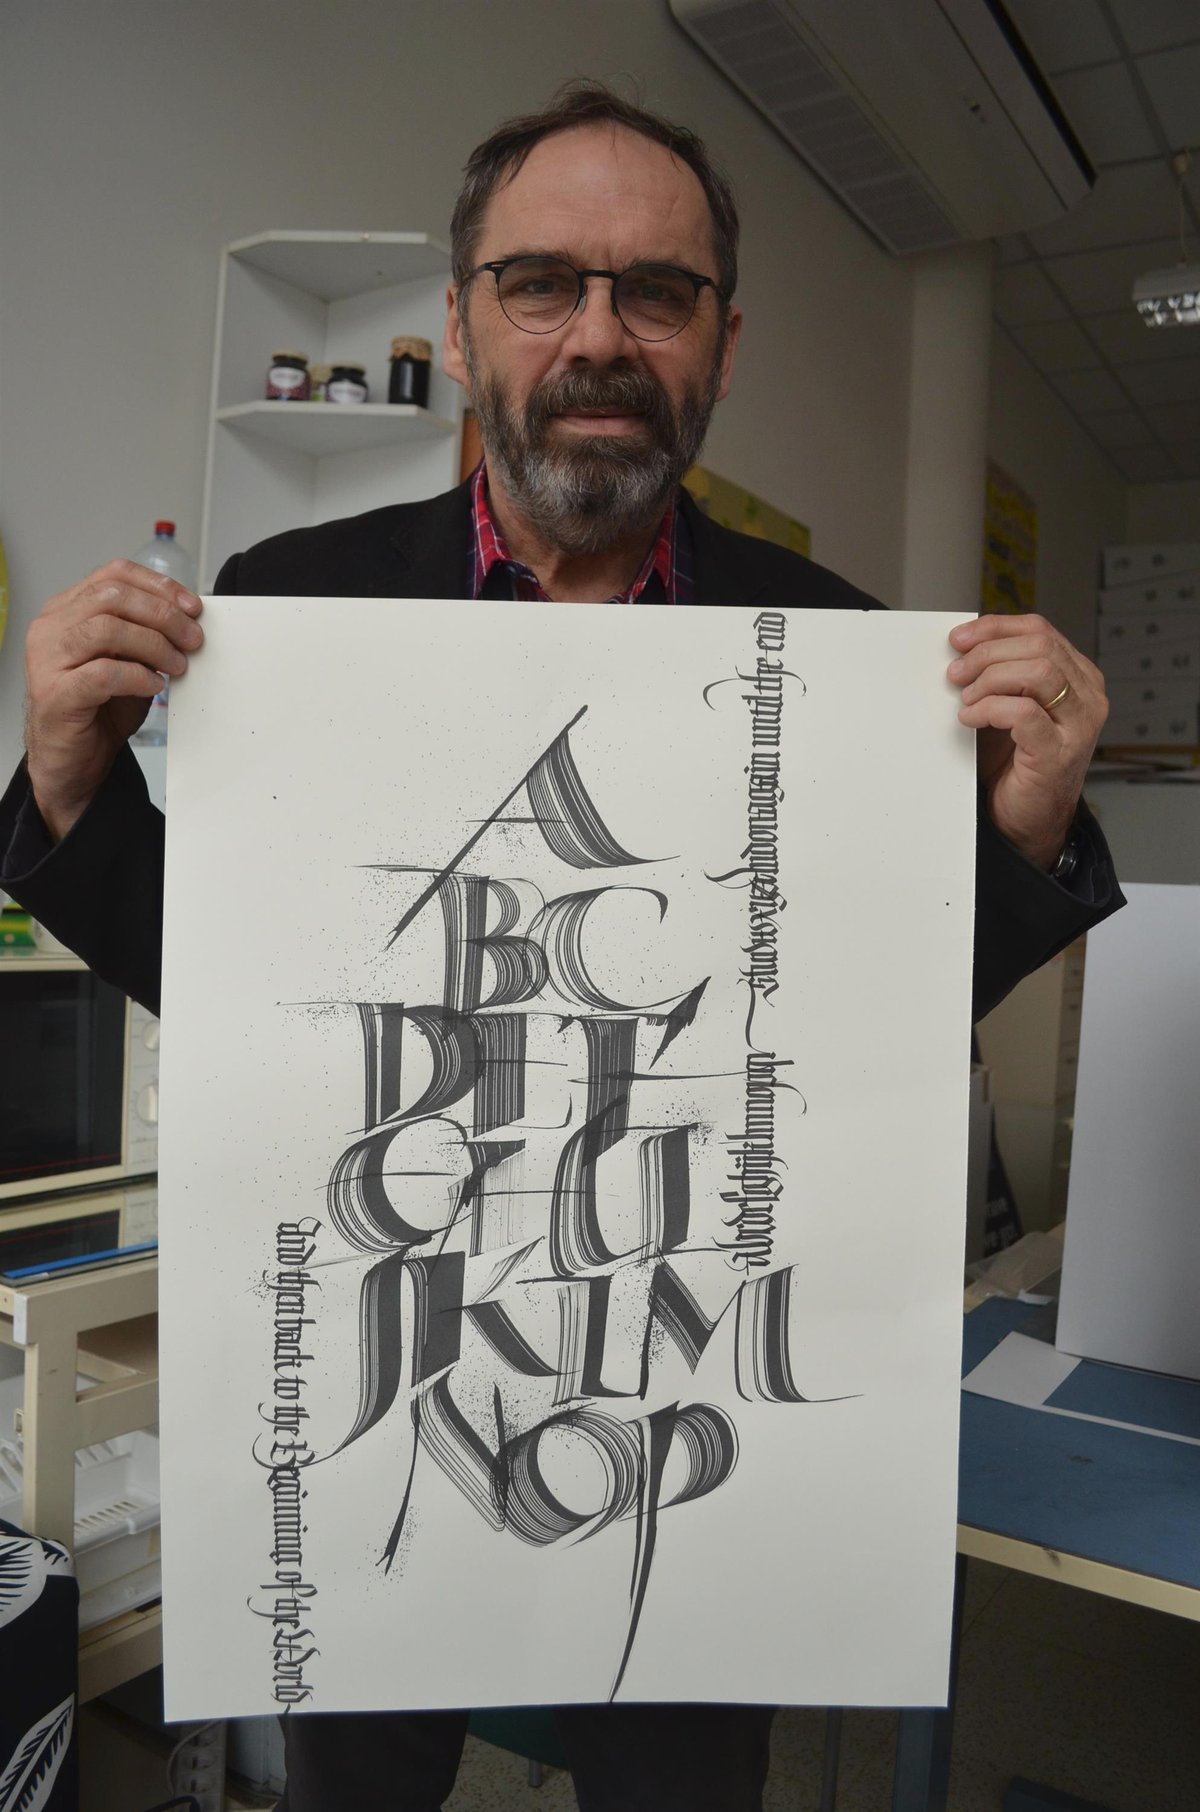 Vedoucí ateliéru Grafický design Rostislav Ilík ukazuje další ukázku vzácného hosta. Jedna z dalších ukázek profesora, který získal za svoji práci mnoho ocenění